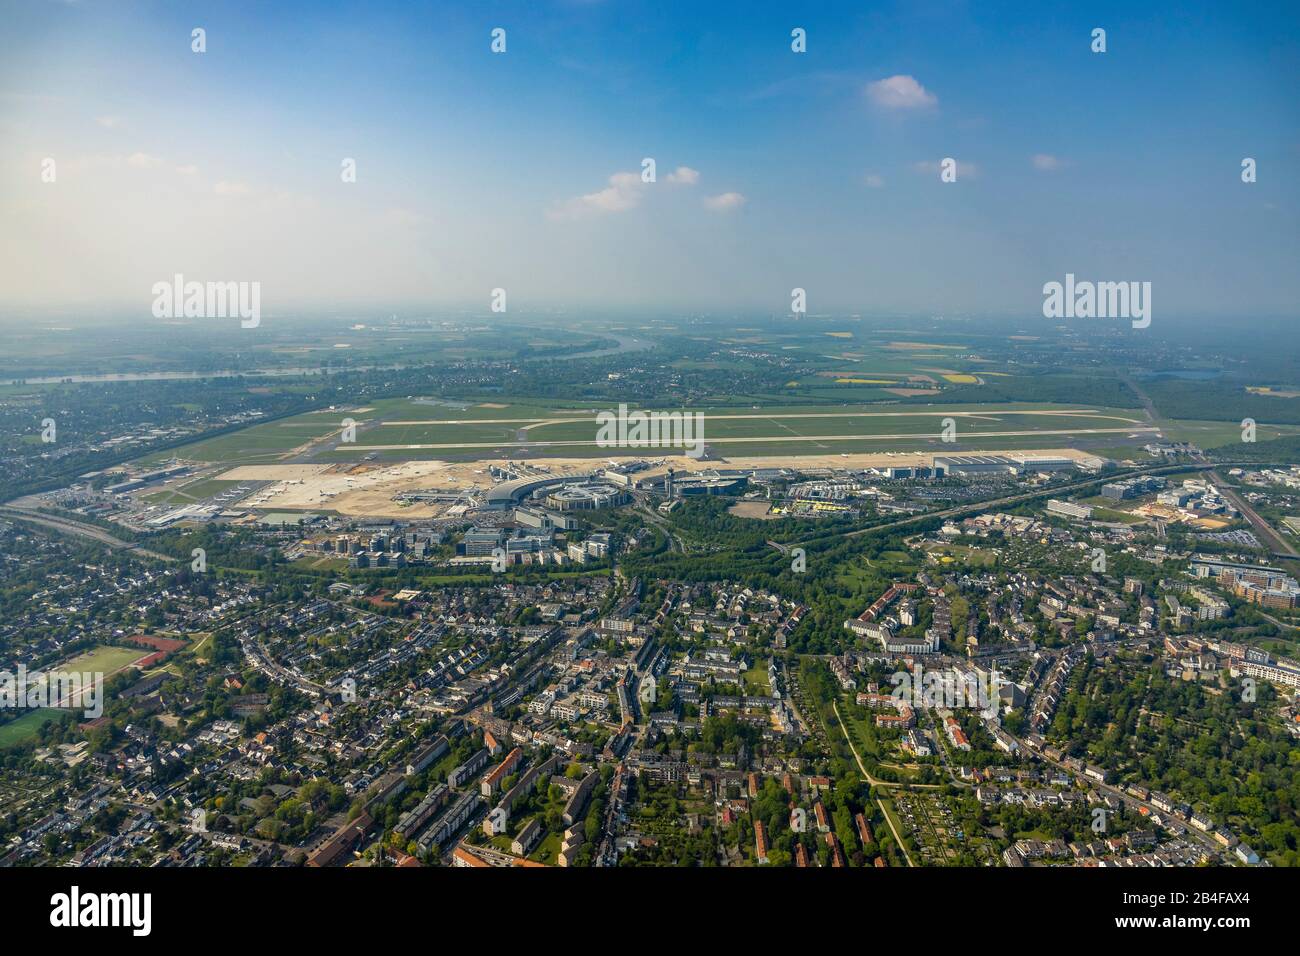 Luftbild zum Flughafen Düsseldorf im Kreis Lohausen und zum Düsseldorfer Stadtteil Lichtenbroich im Rheinland im Land Nordrhein-Westfalen, Deutschland. Stockfoto